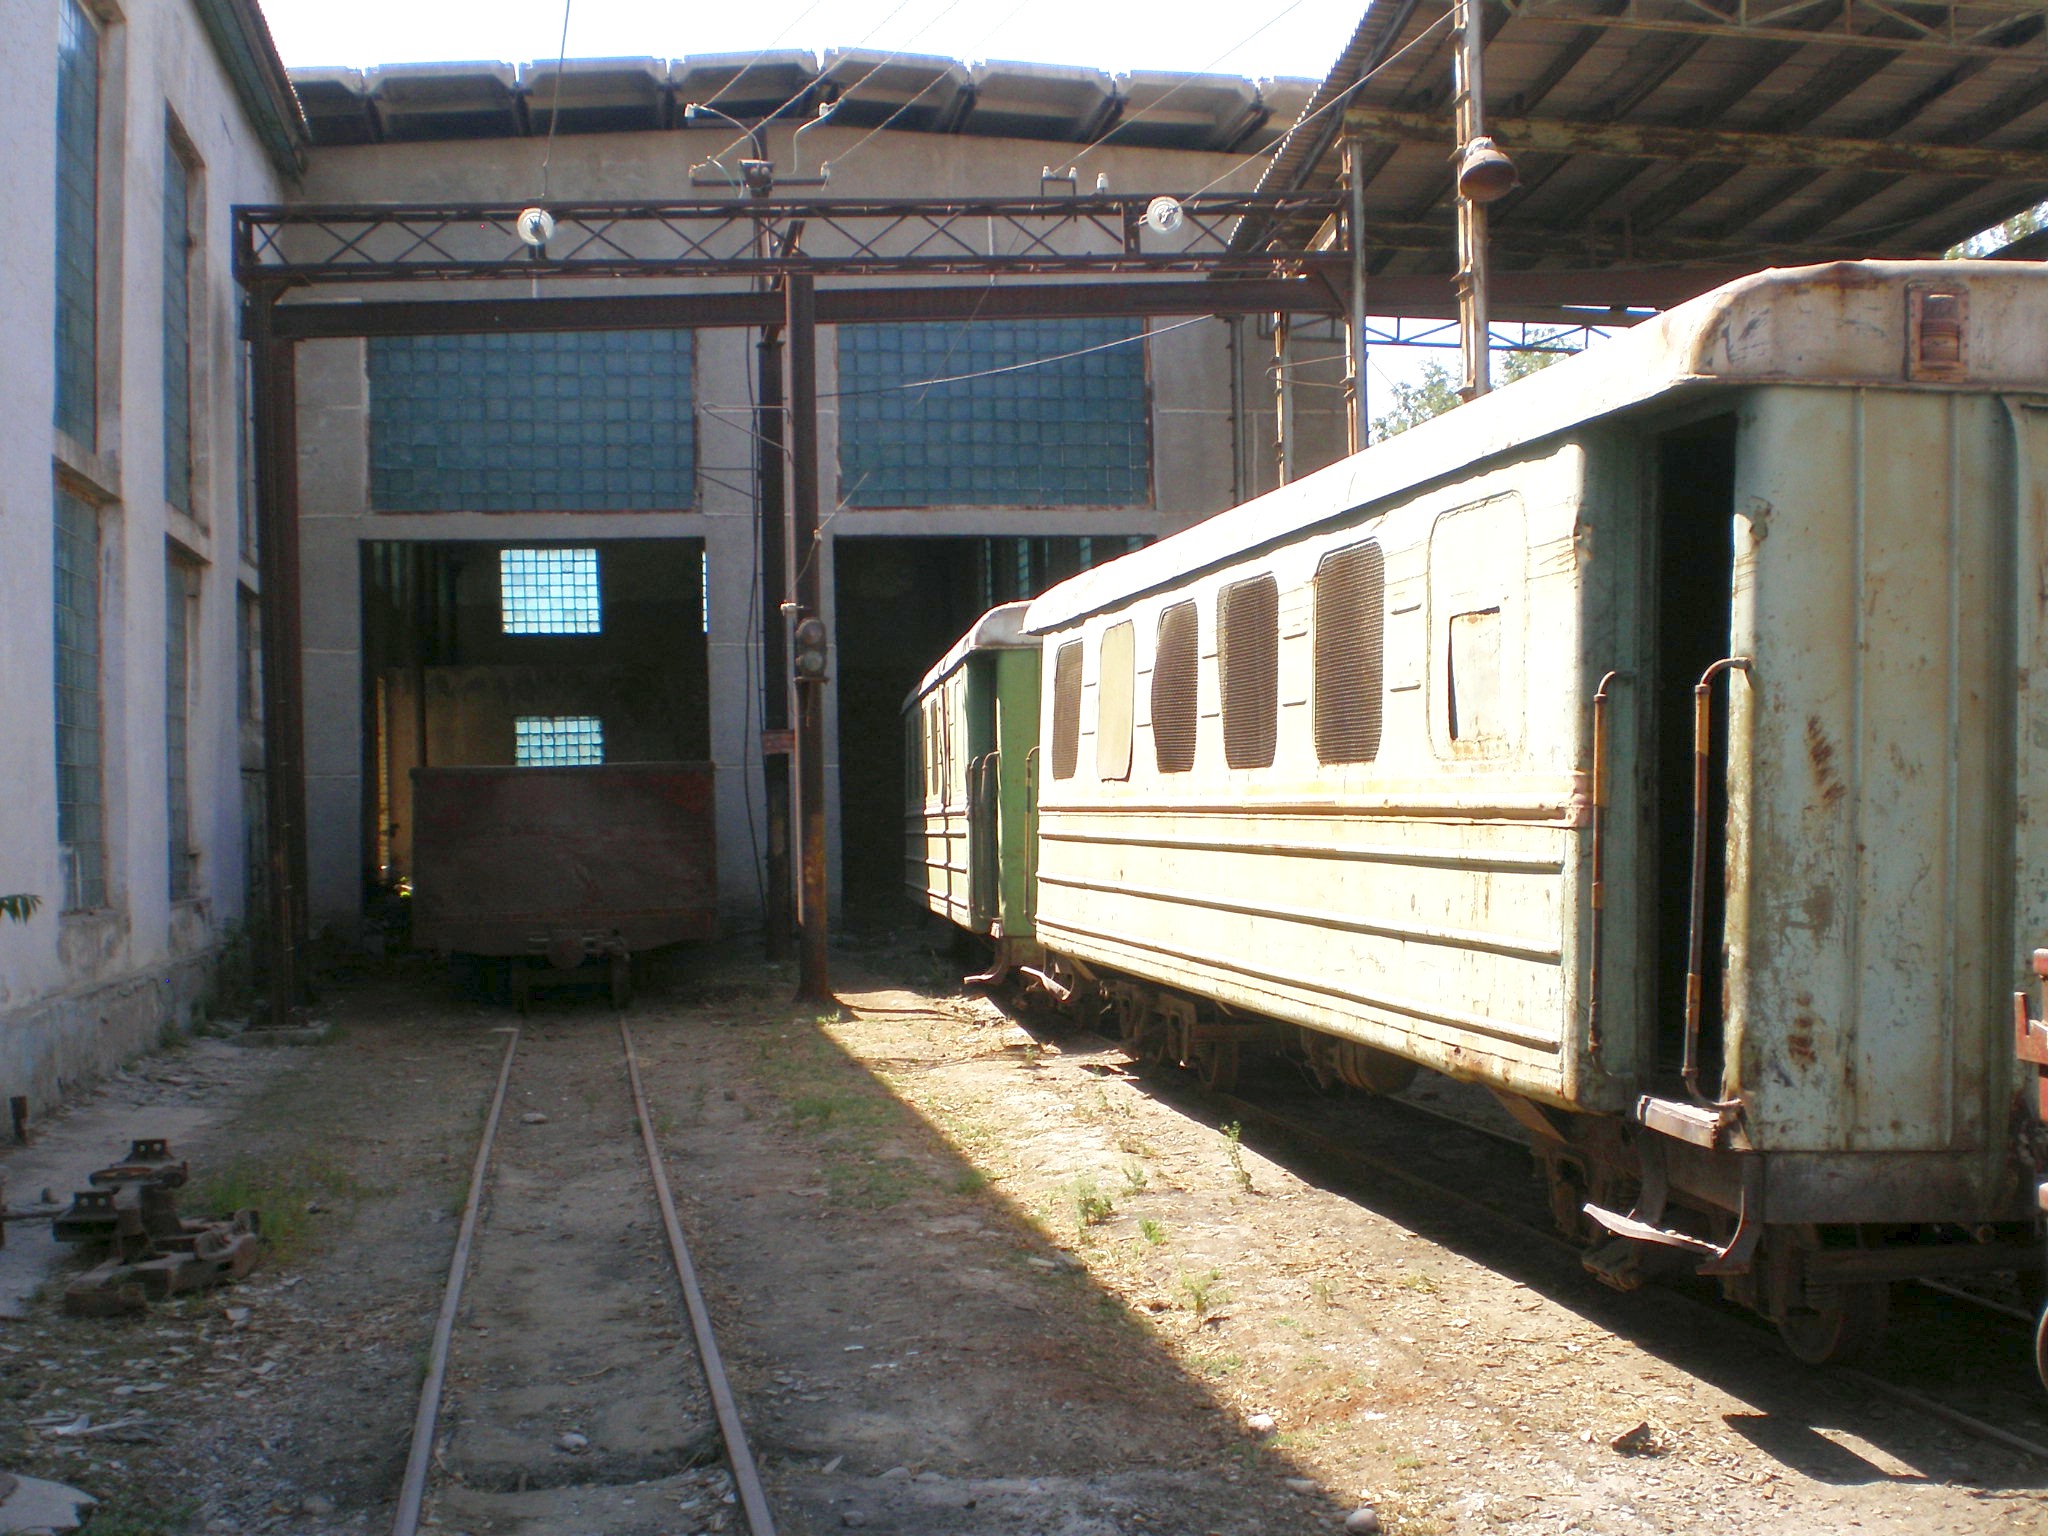 Сулюктинская узкоколейная железная дорога  —  фотографии, сделанные в 2008 году (часть 10)